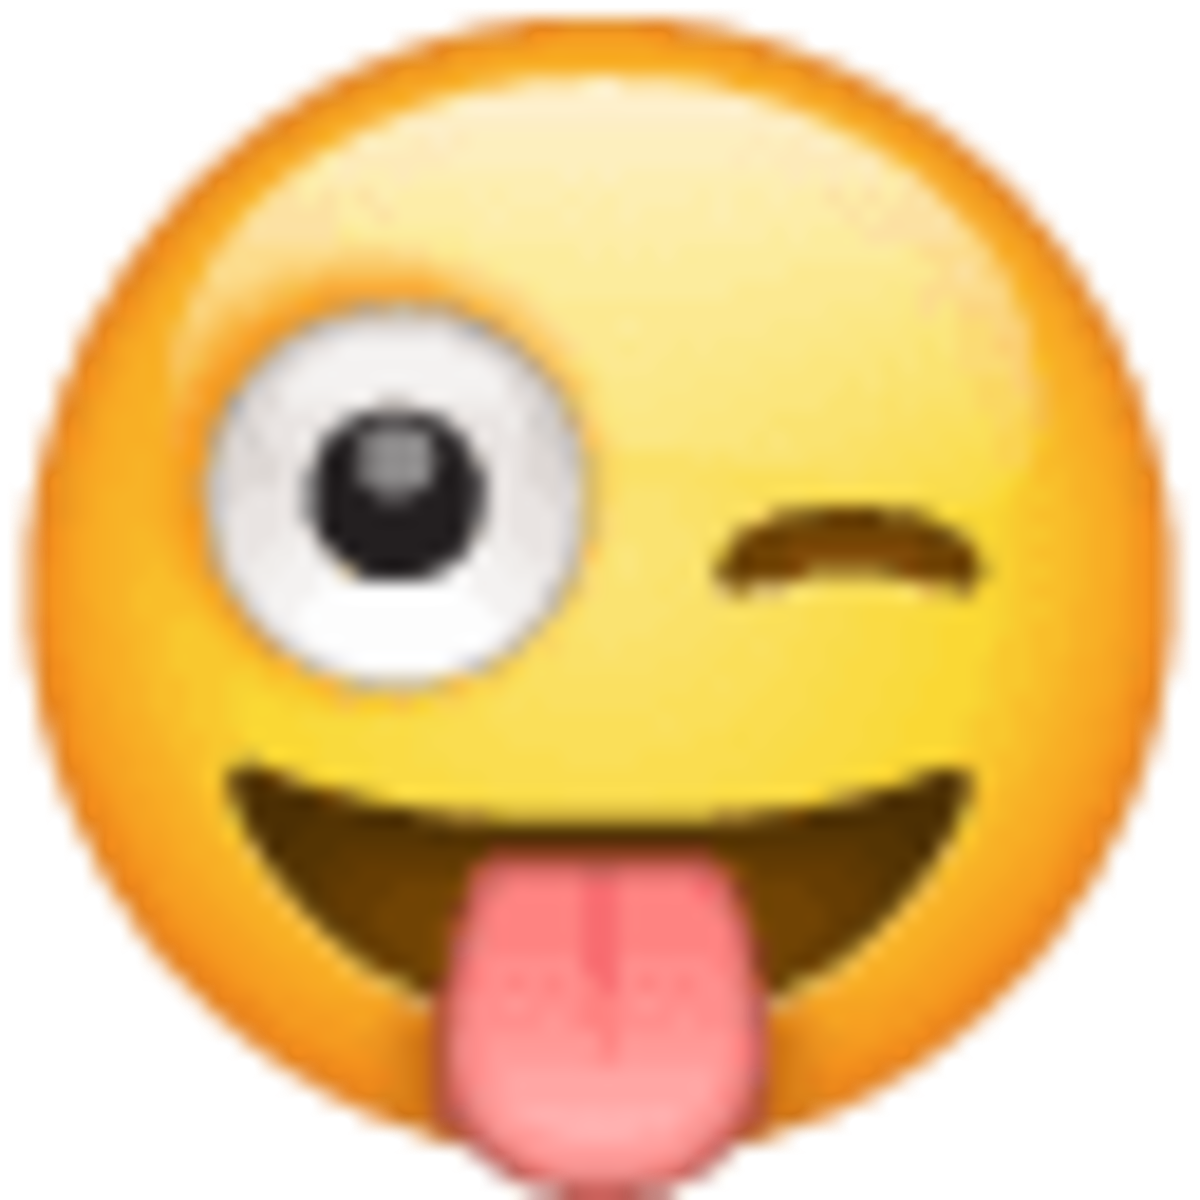 Emoji 1f61c, cara sonriente guiñando un ojo con la lengua fuera